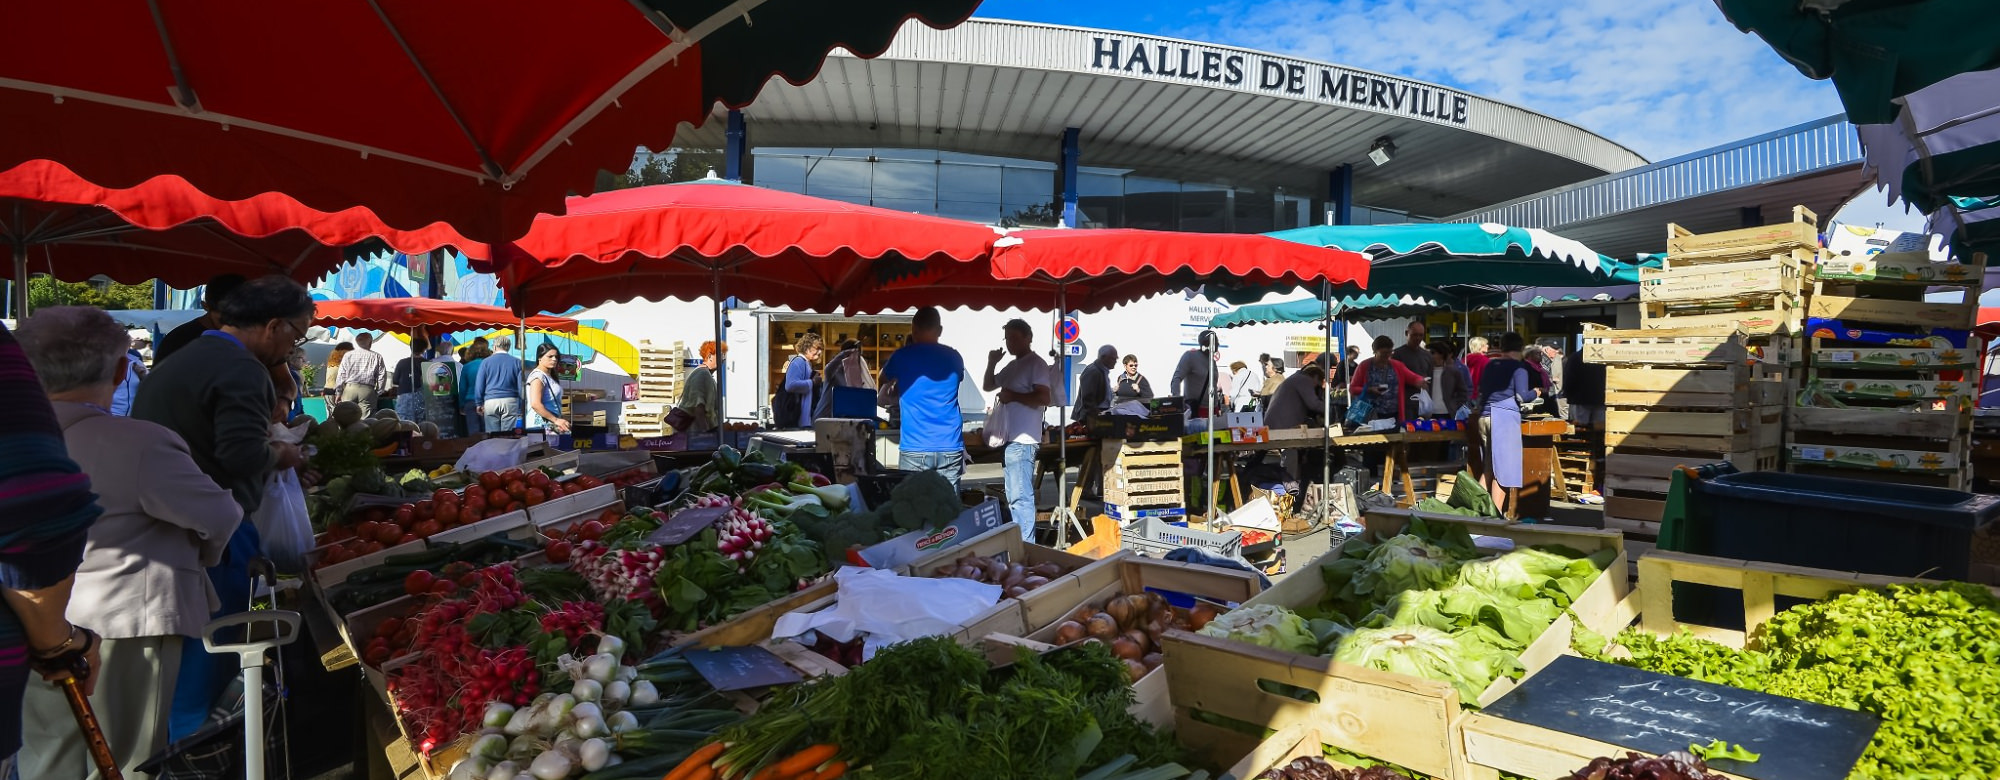 Le marché de Merville à Lorient - ©Emmanuel LEMEE - LBST